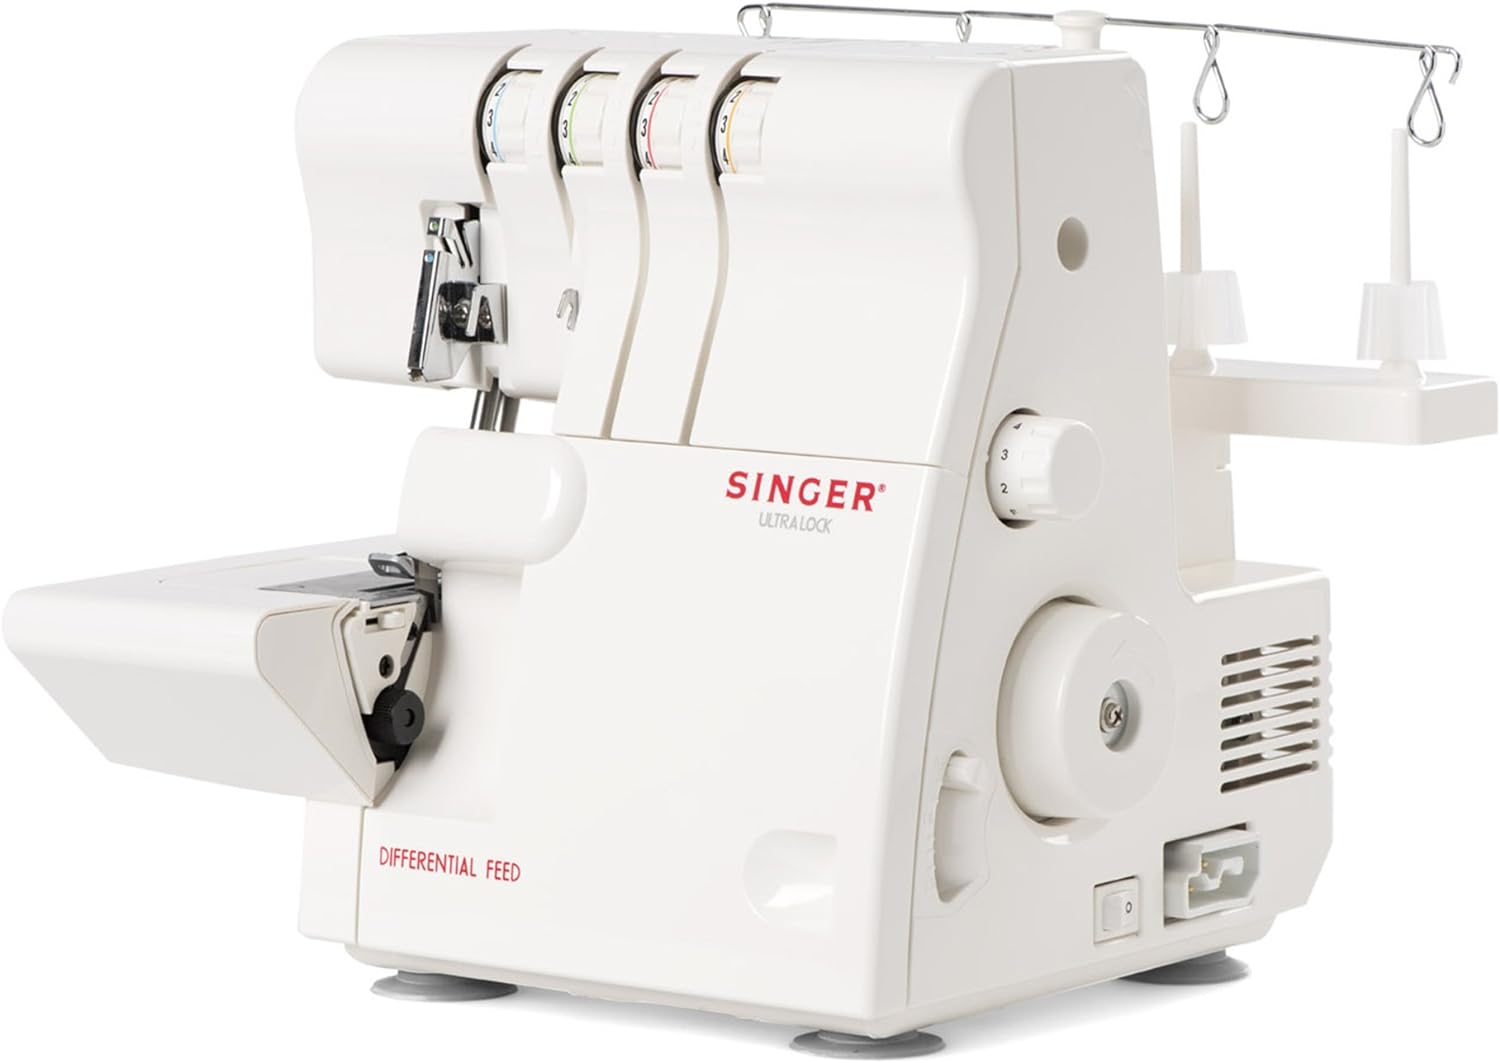 Singer 14SH654 Máquina de coser Remalladora